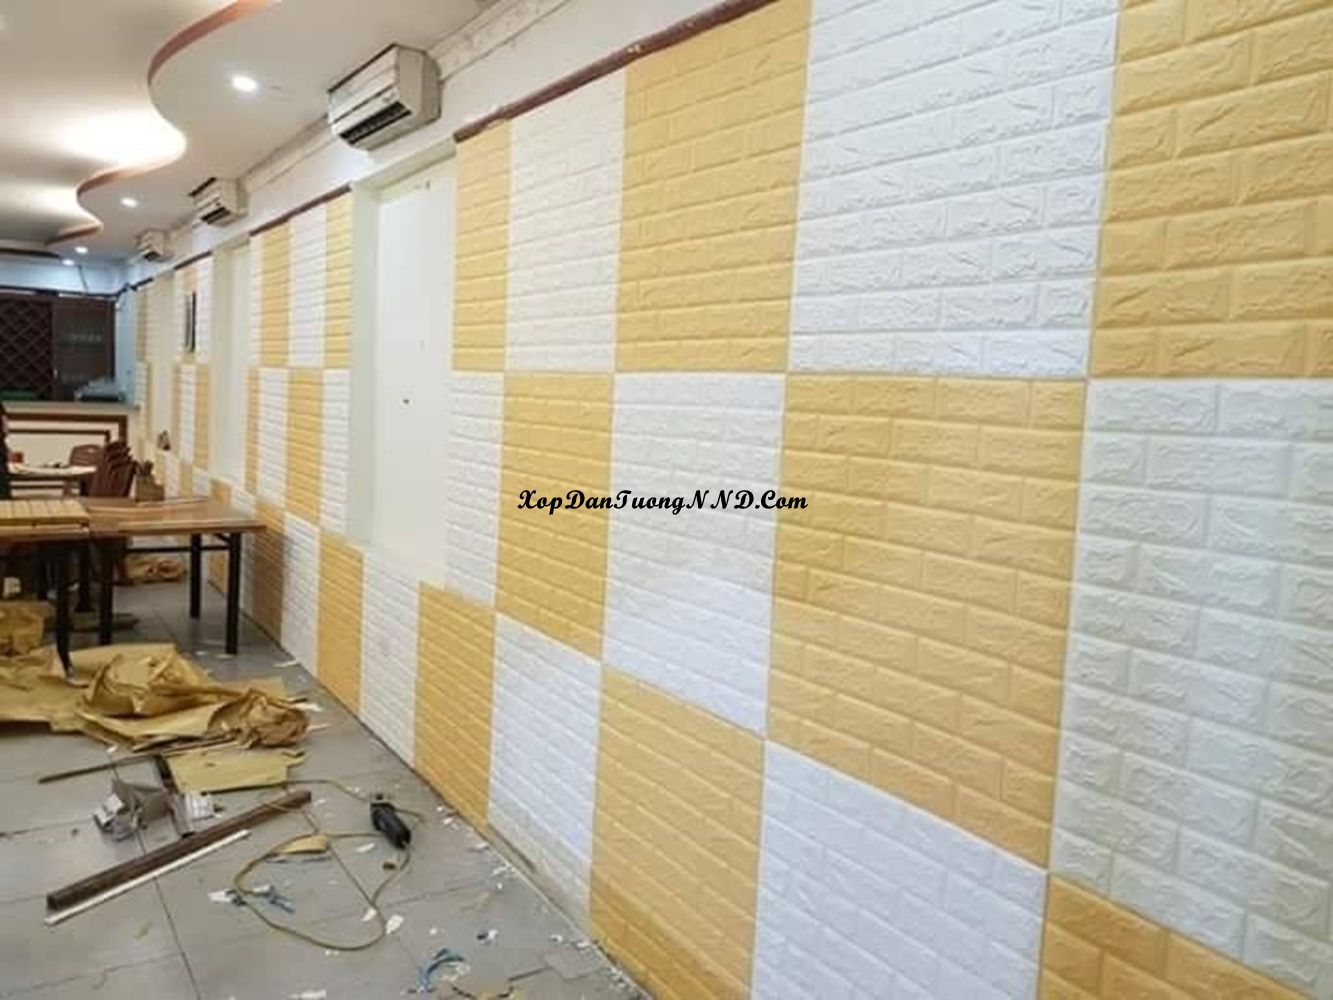 Xốp dán tường màu vàng cho không gian sang trọng